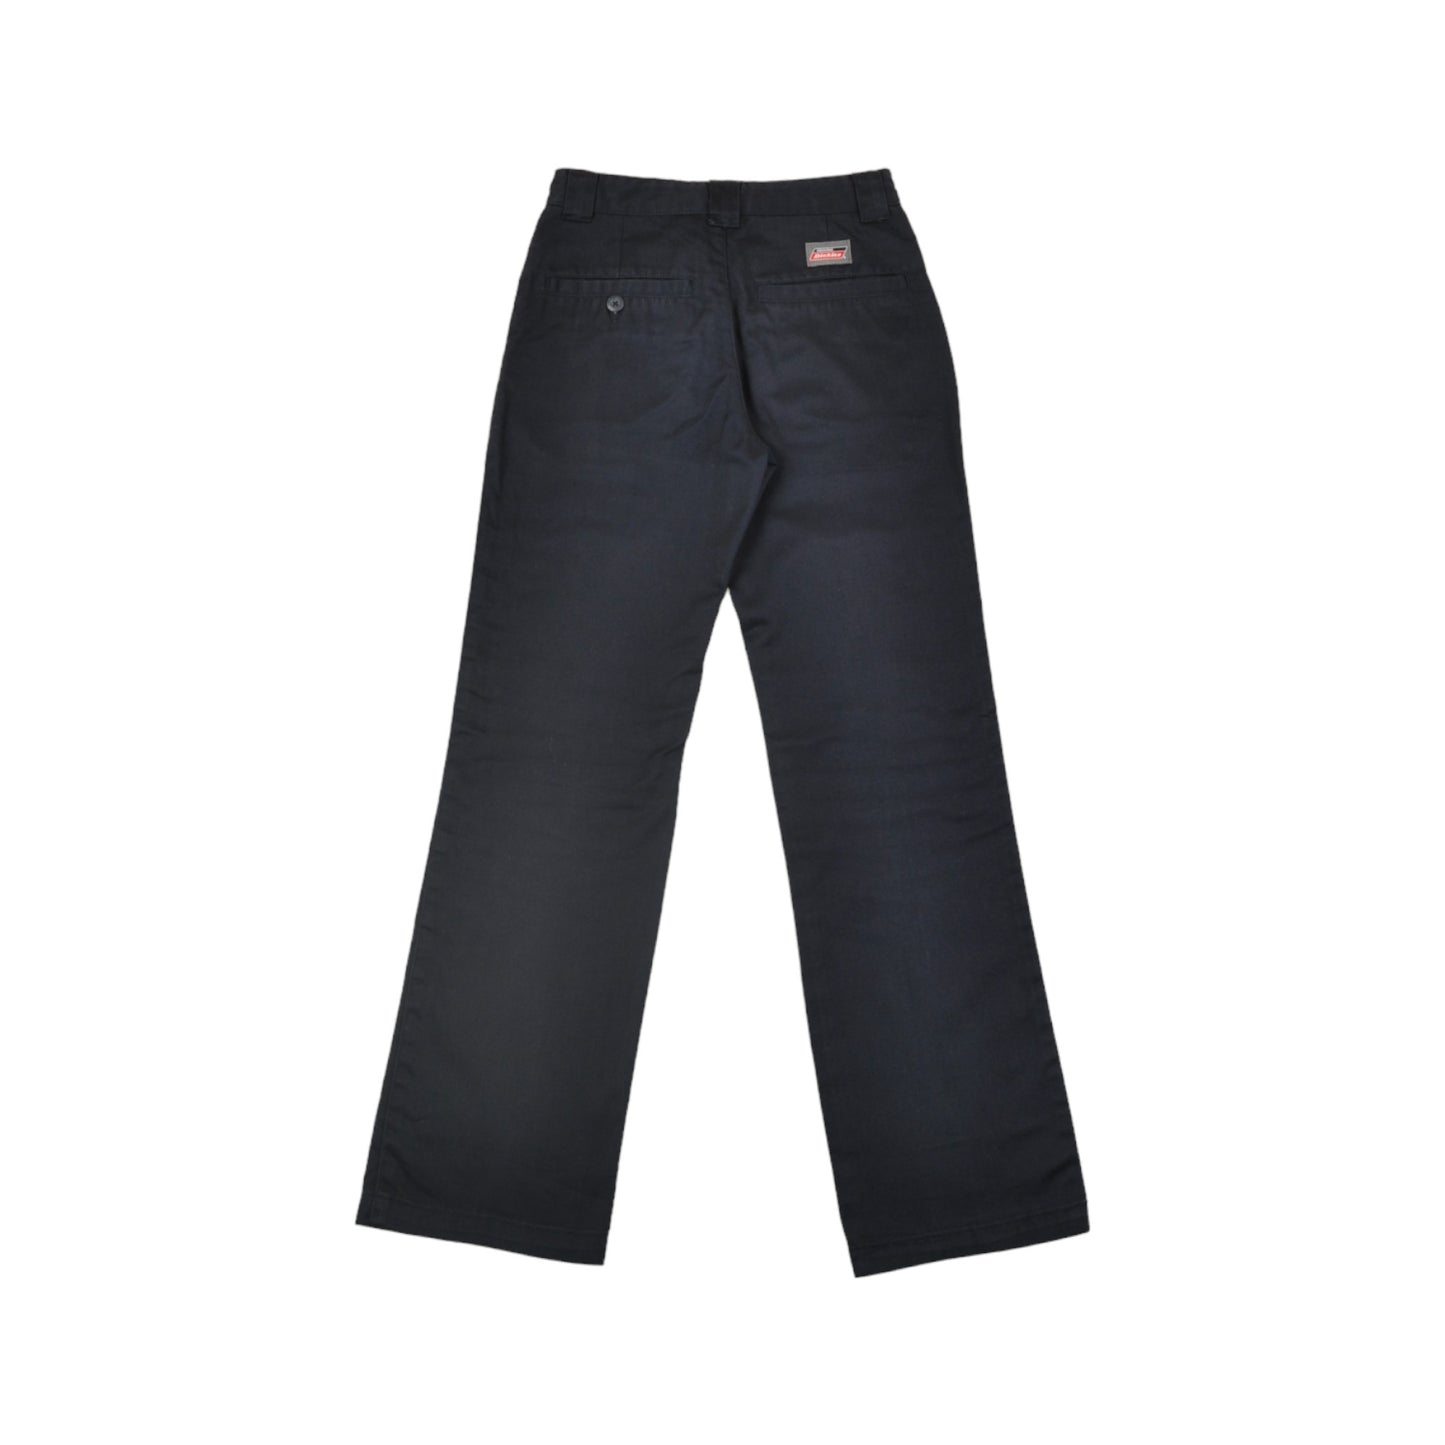 Vintage Dickies Workwear Pants Navy Youth W24 L25